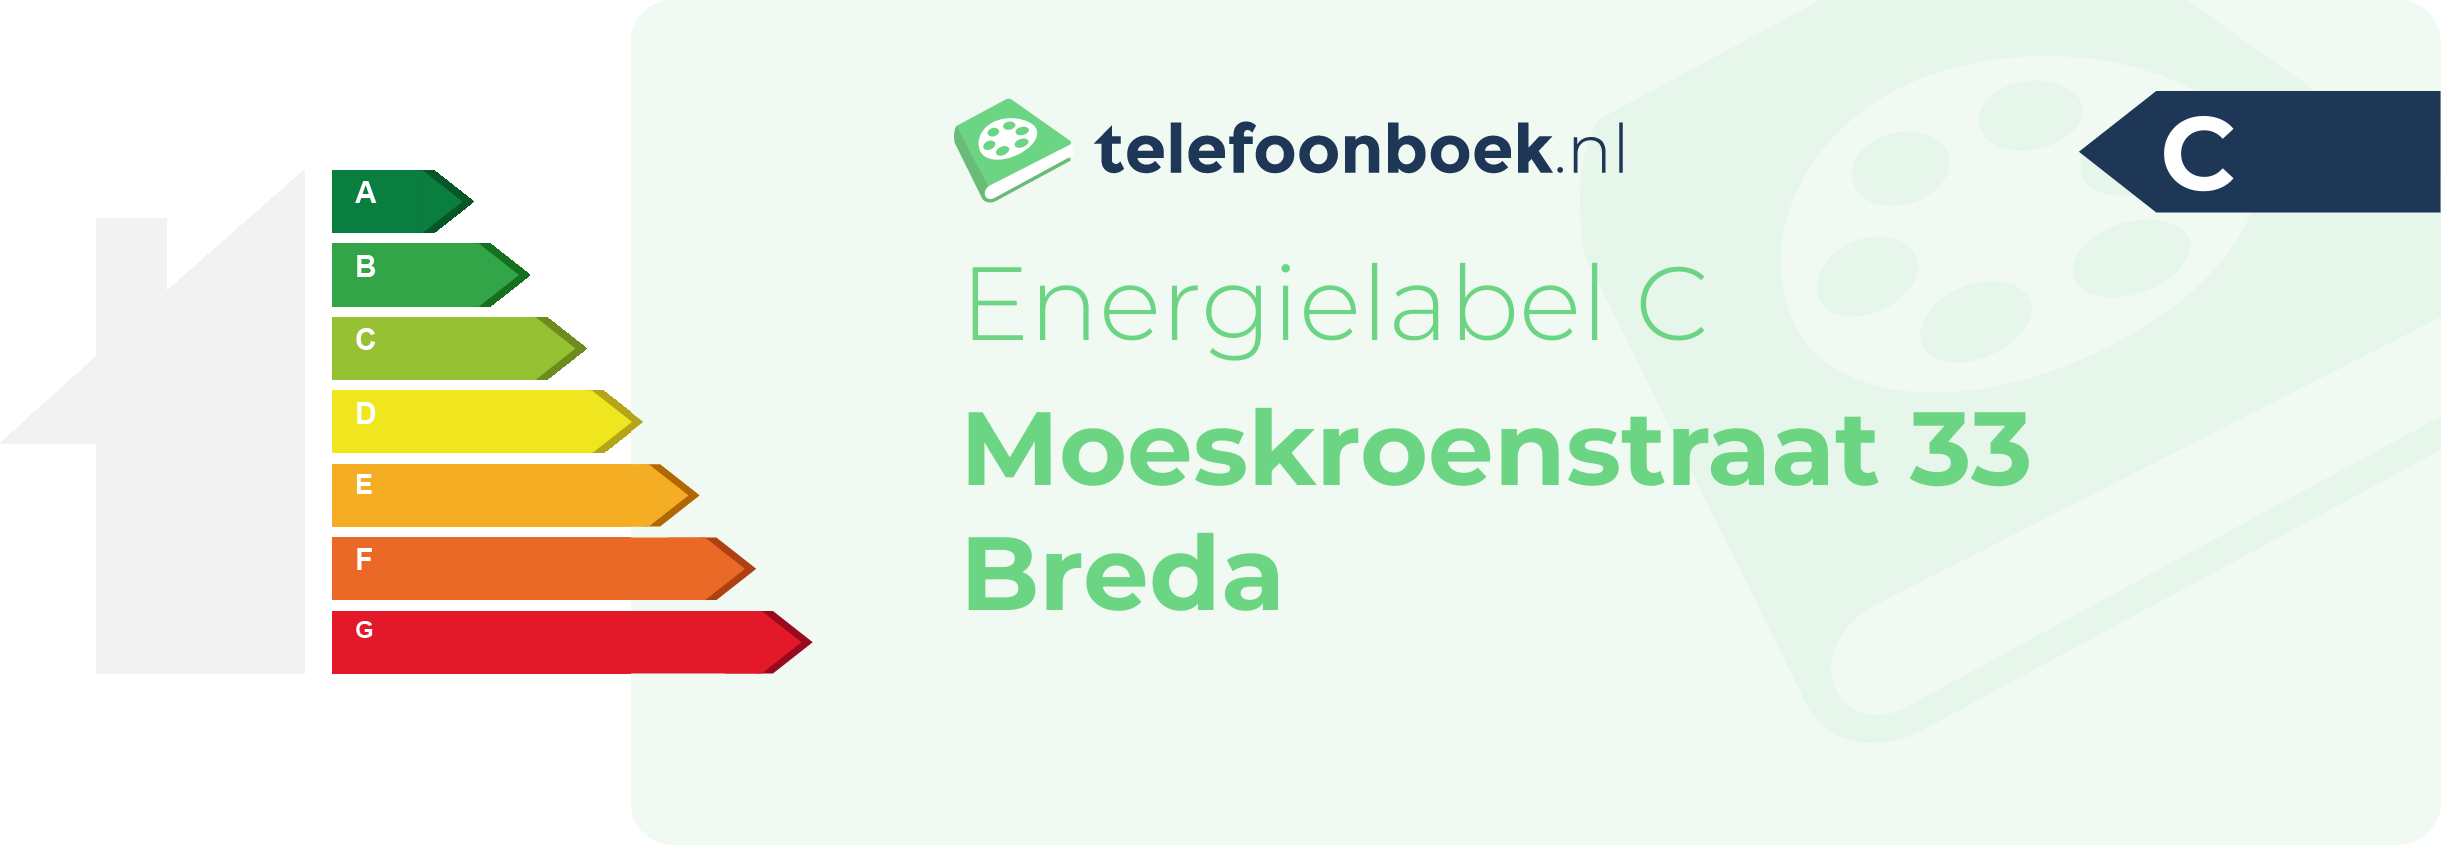 Energielabel Moeskroenstraat 33 Breda